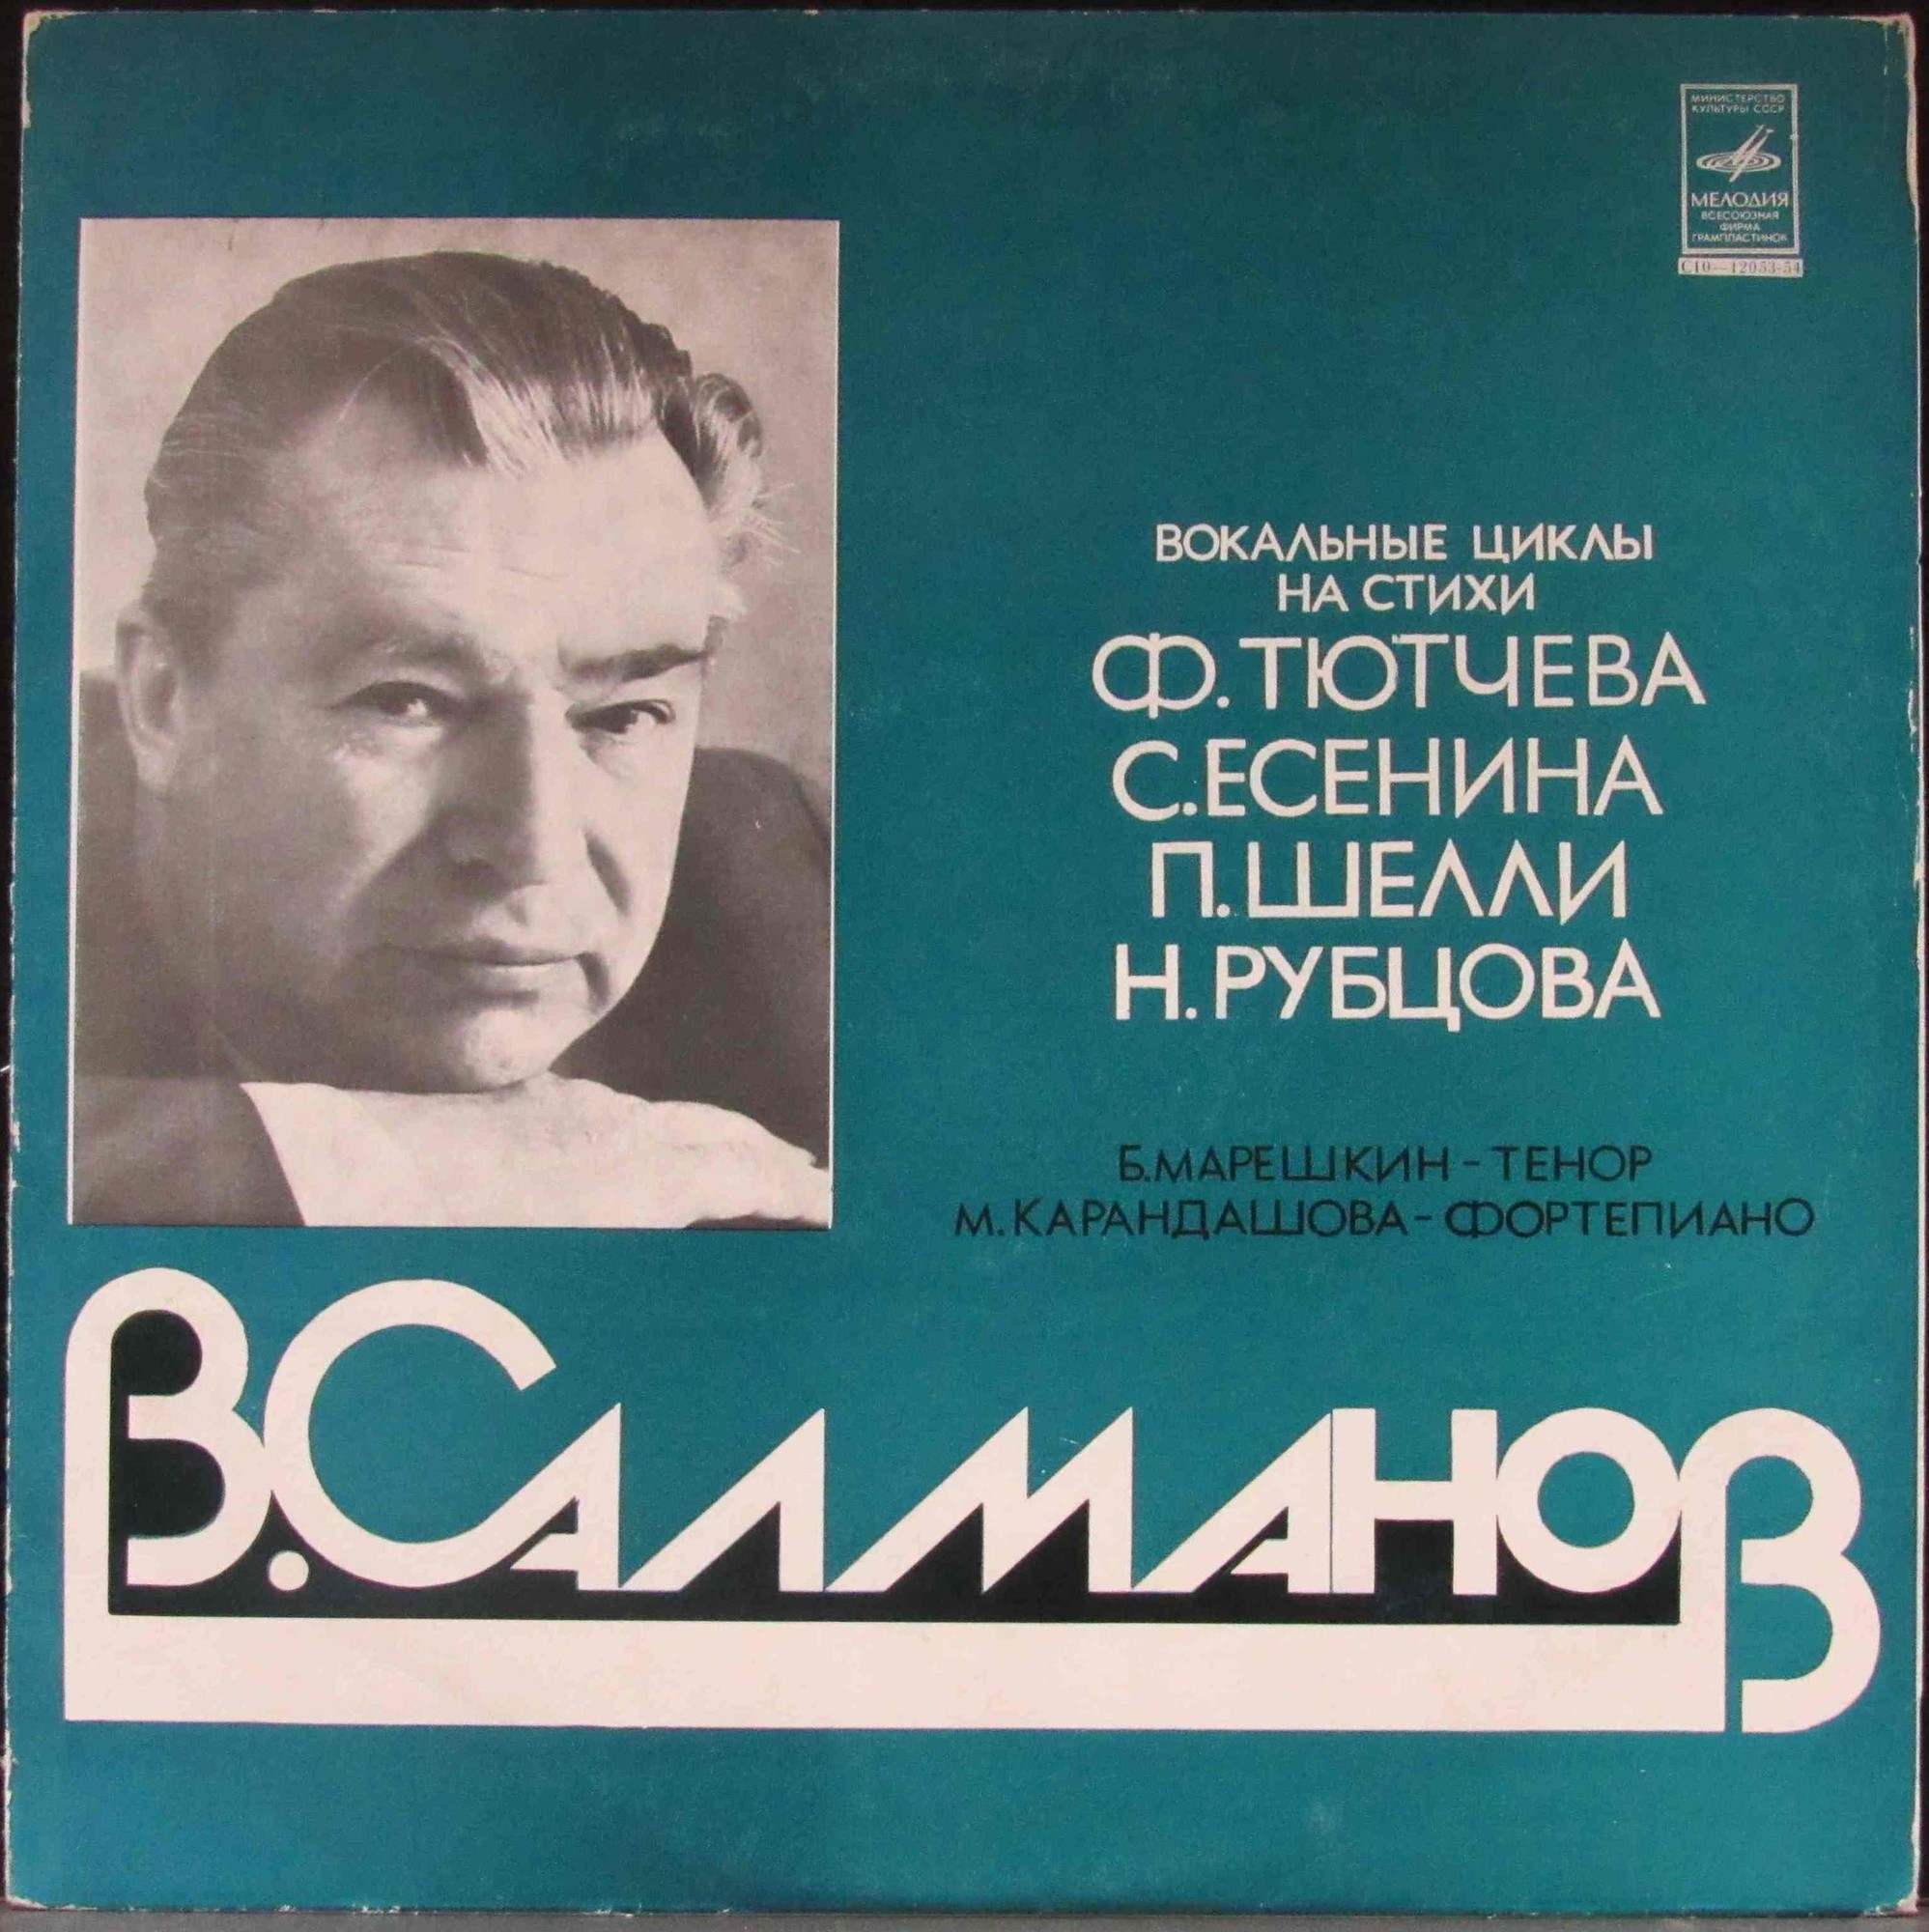 B. САЛМАНОВ (1912—1978)